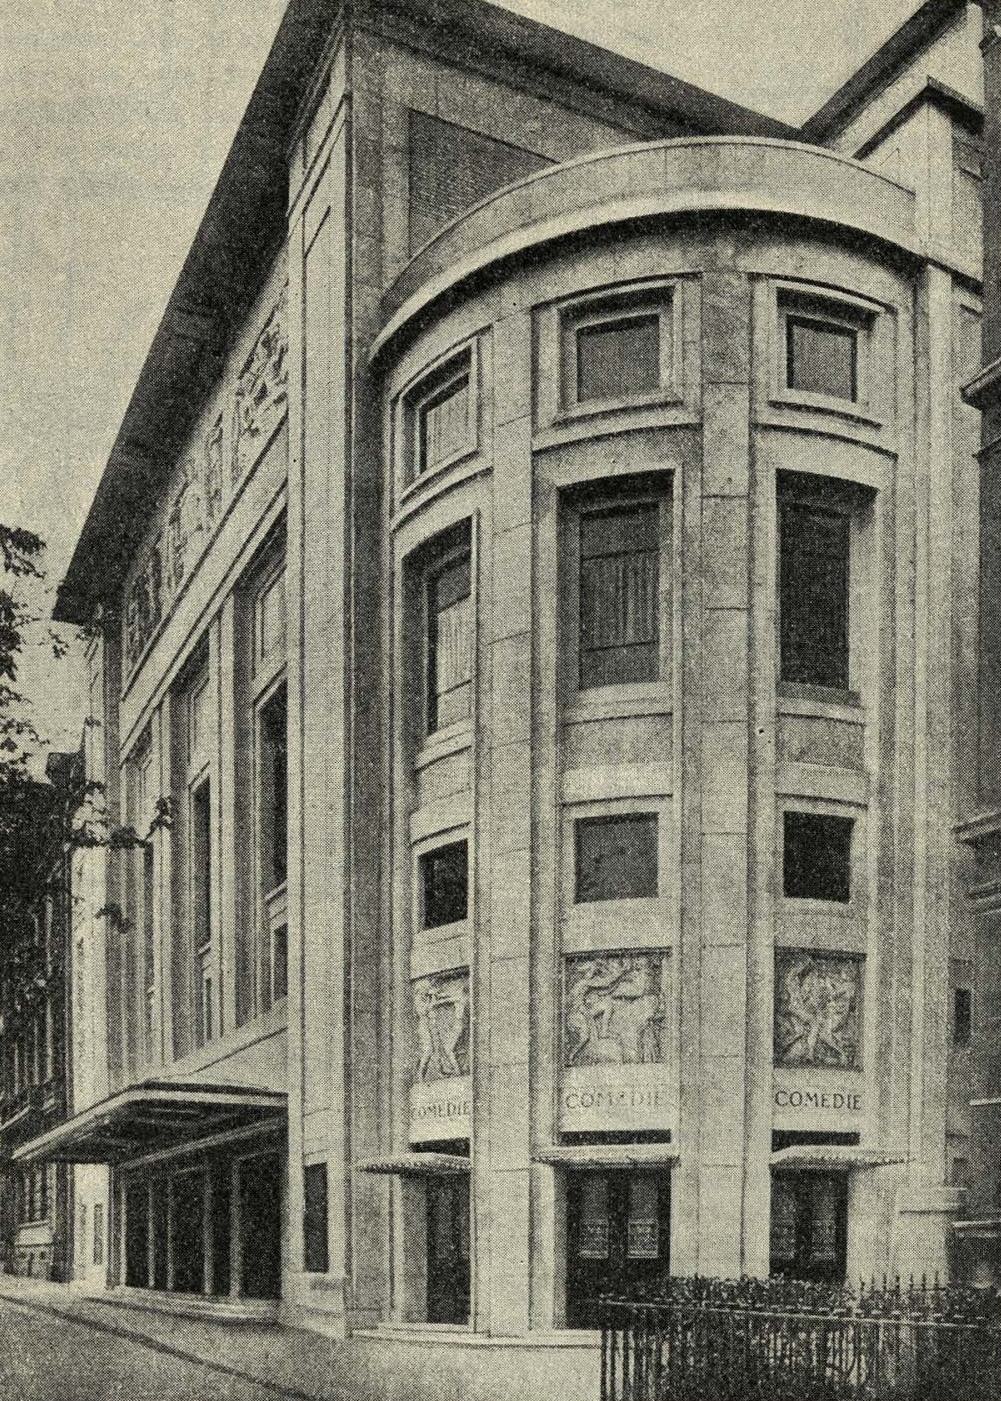 Рис. 9. Театр Елисейских полей в Париже. 1913 г. Вид главного фасада. Архитекторы О. и Г. Перрэ